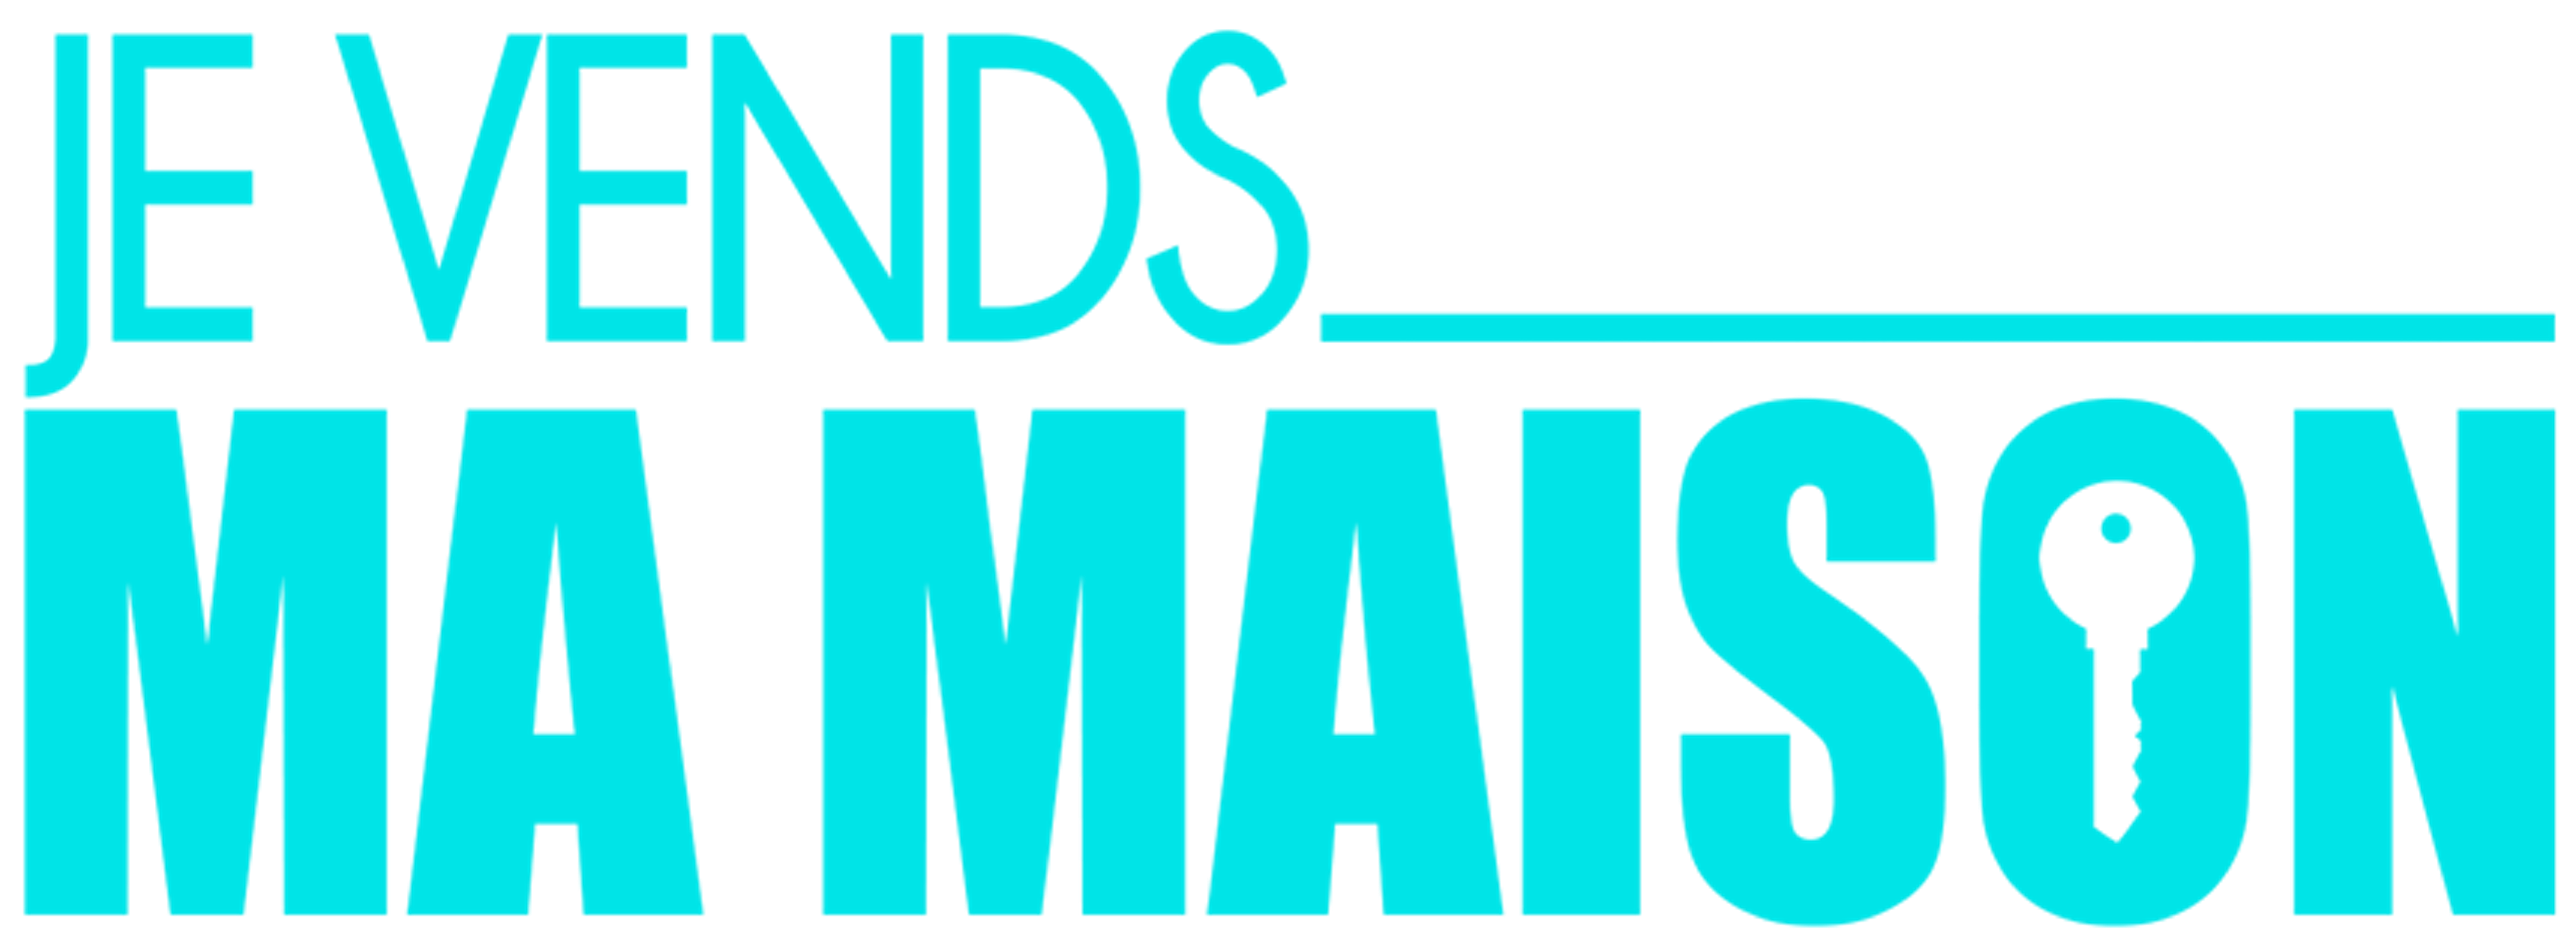 Logo de l'émission Je Vends Ma Maison de RTL TVI produit en co-production avec We Invest. Le logo est bleu avec une clé au milieu du O de "Maison".